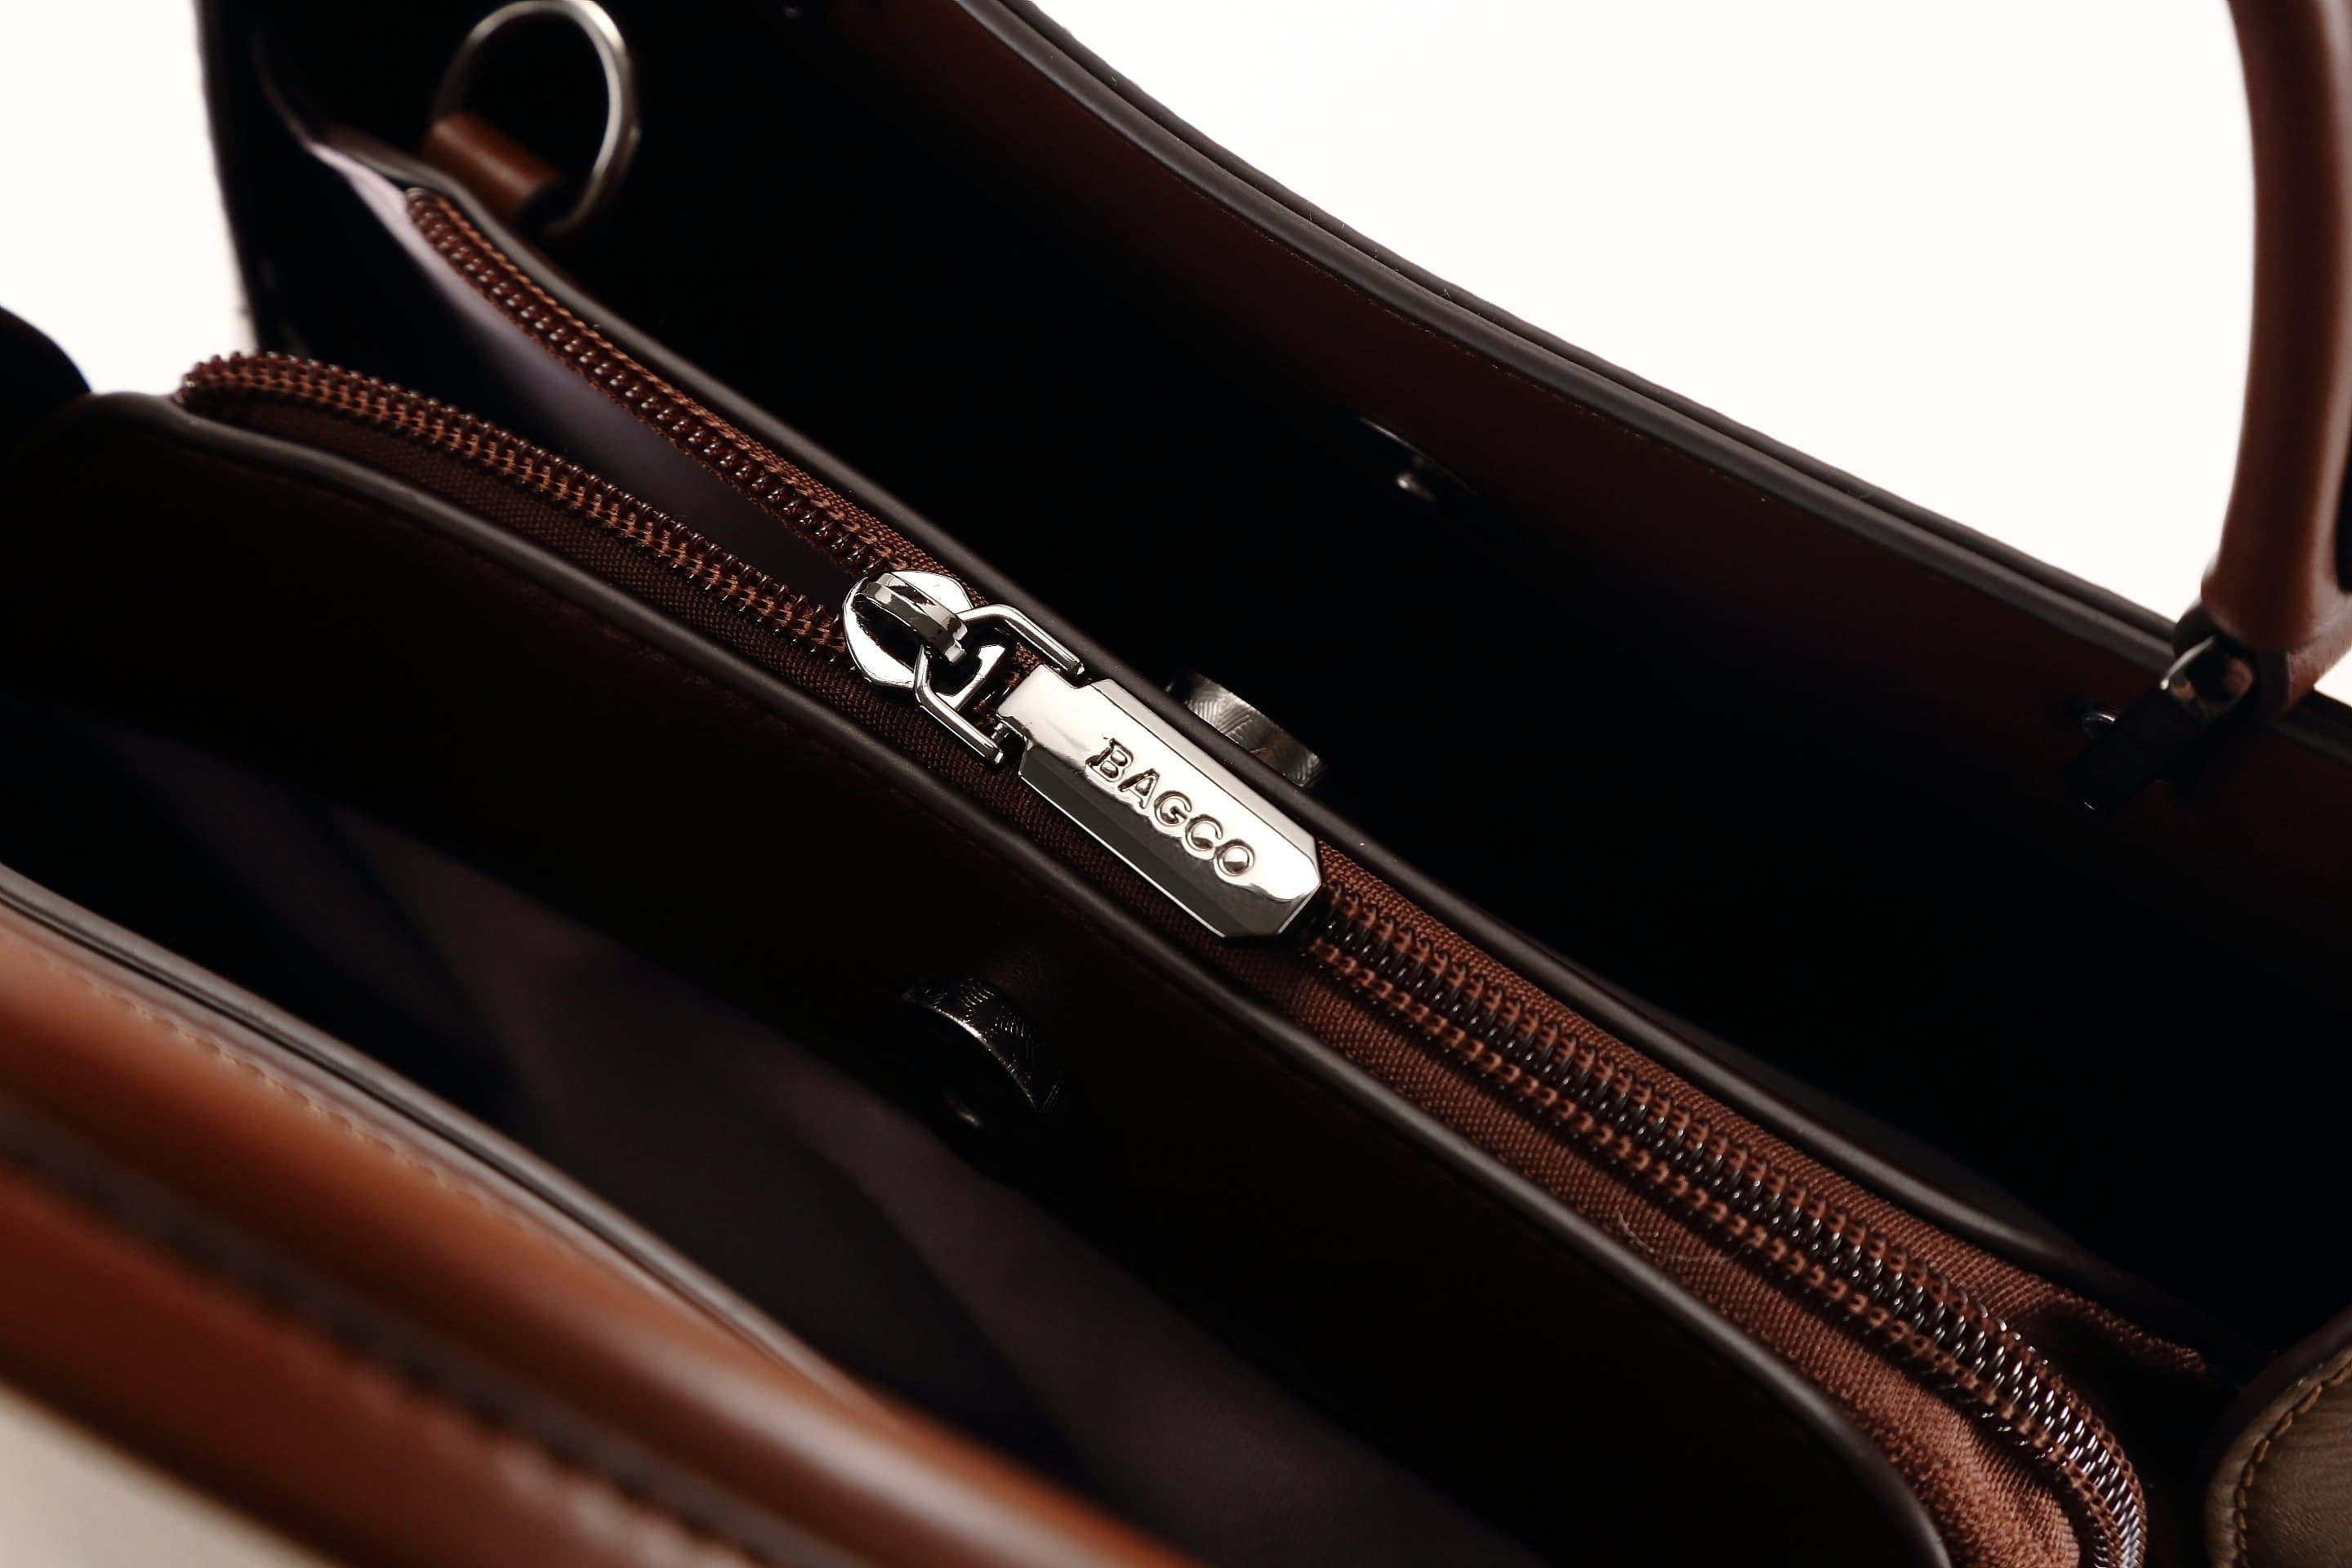 حقيبة يد نسائية باللون البنى الفاتح مربعة الشكل كبيرة الحجم بيد وحزام طويل لحملها على الكتف - KSA